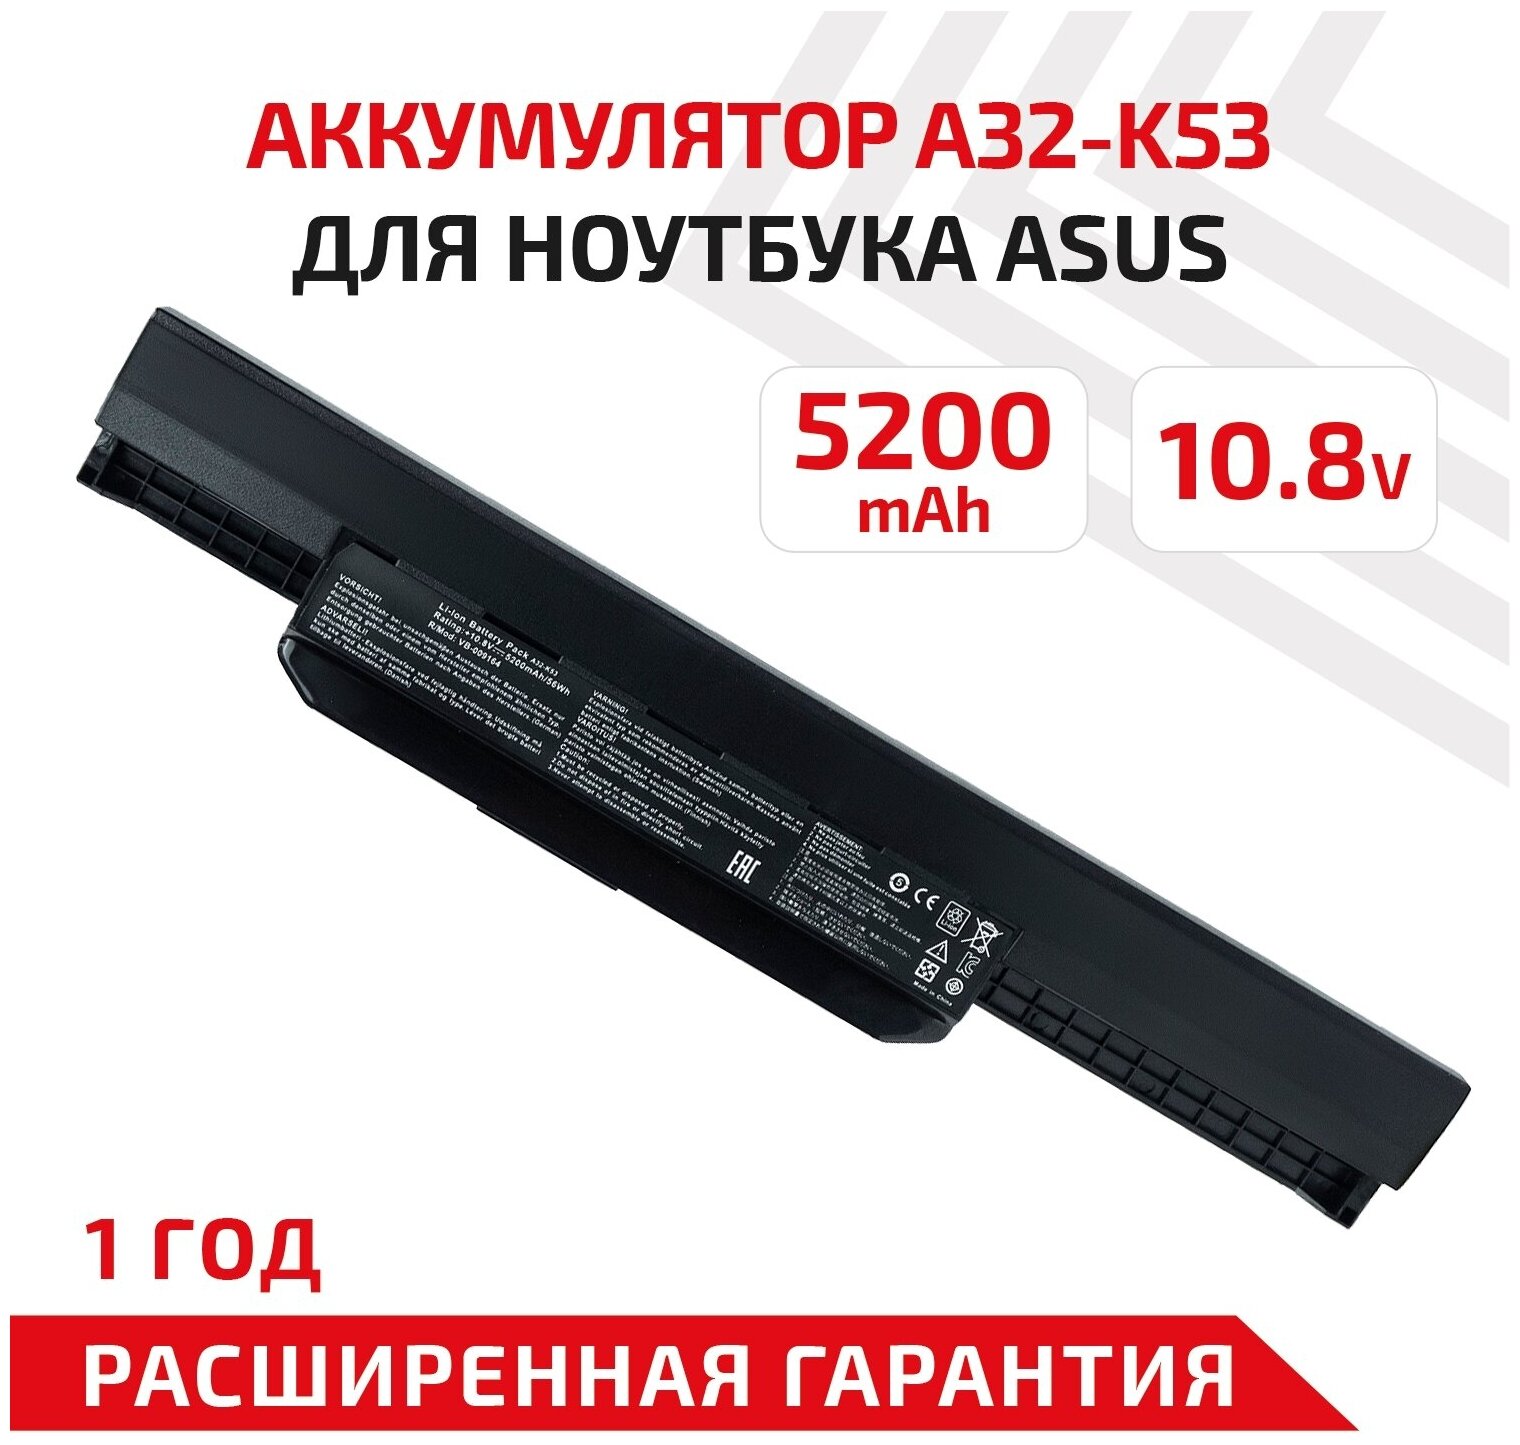 Аккумулятор (АКБ аккумуляторная батарея) A32-K53 для ноутбука Asus K53 10.8В 5200мАч